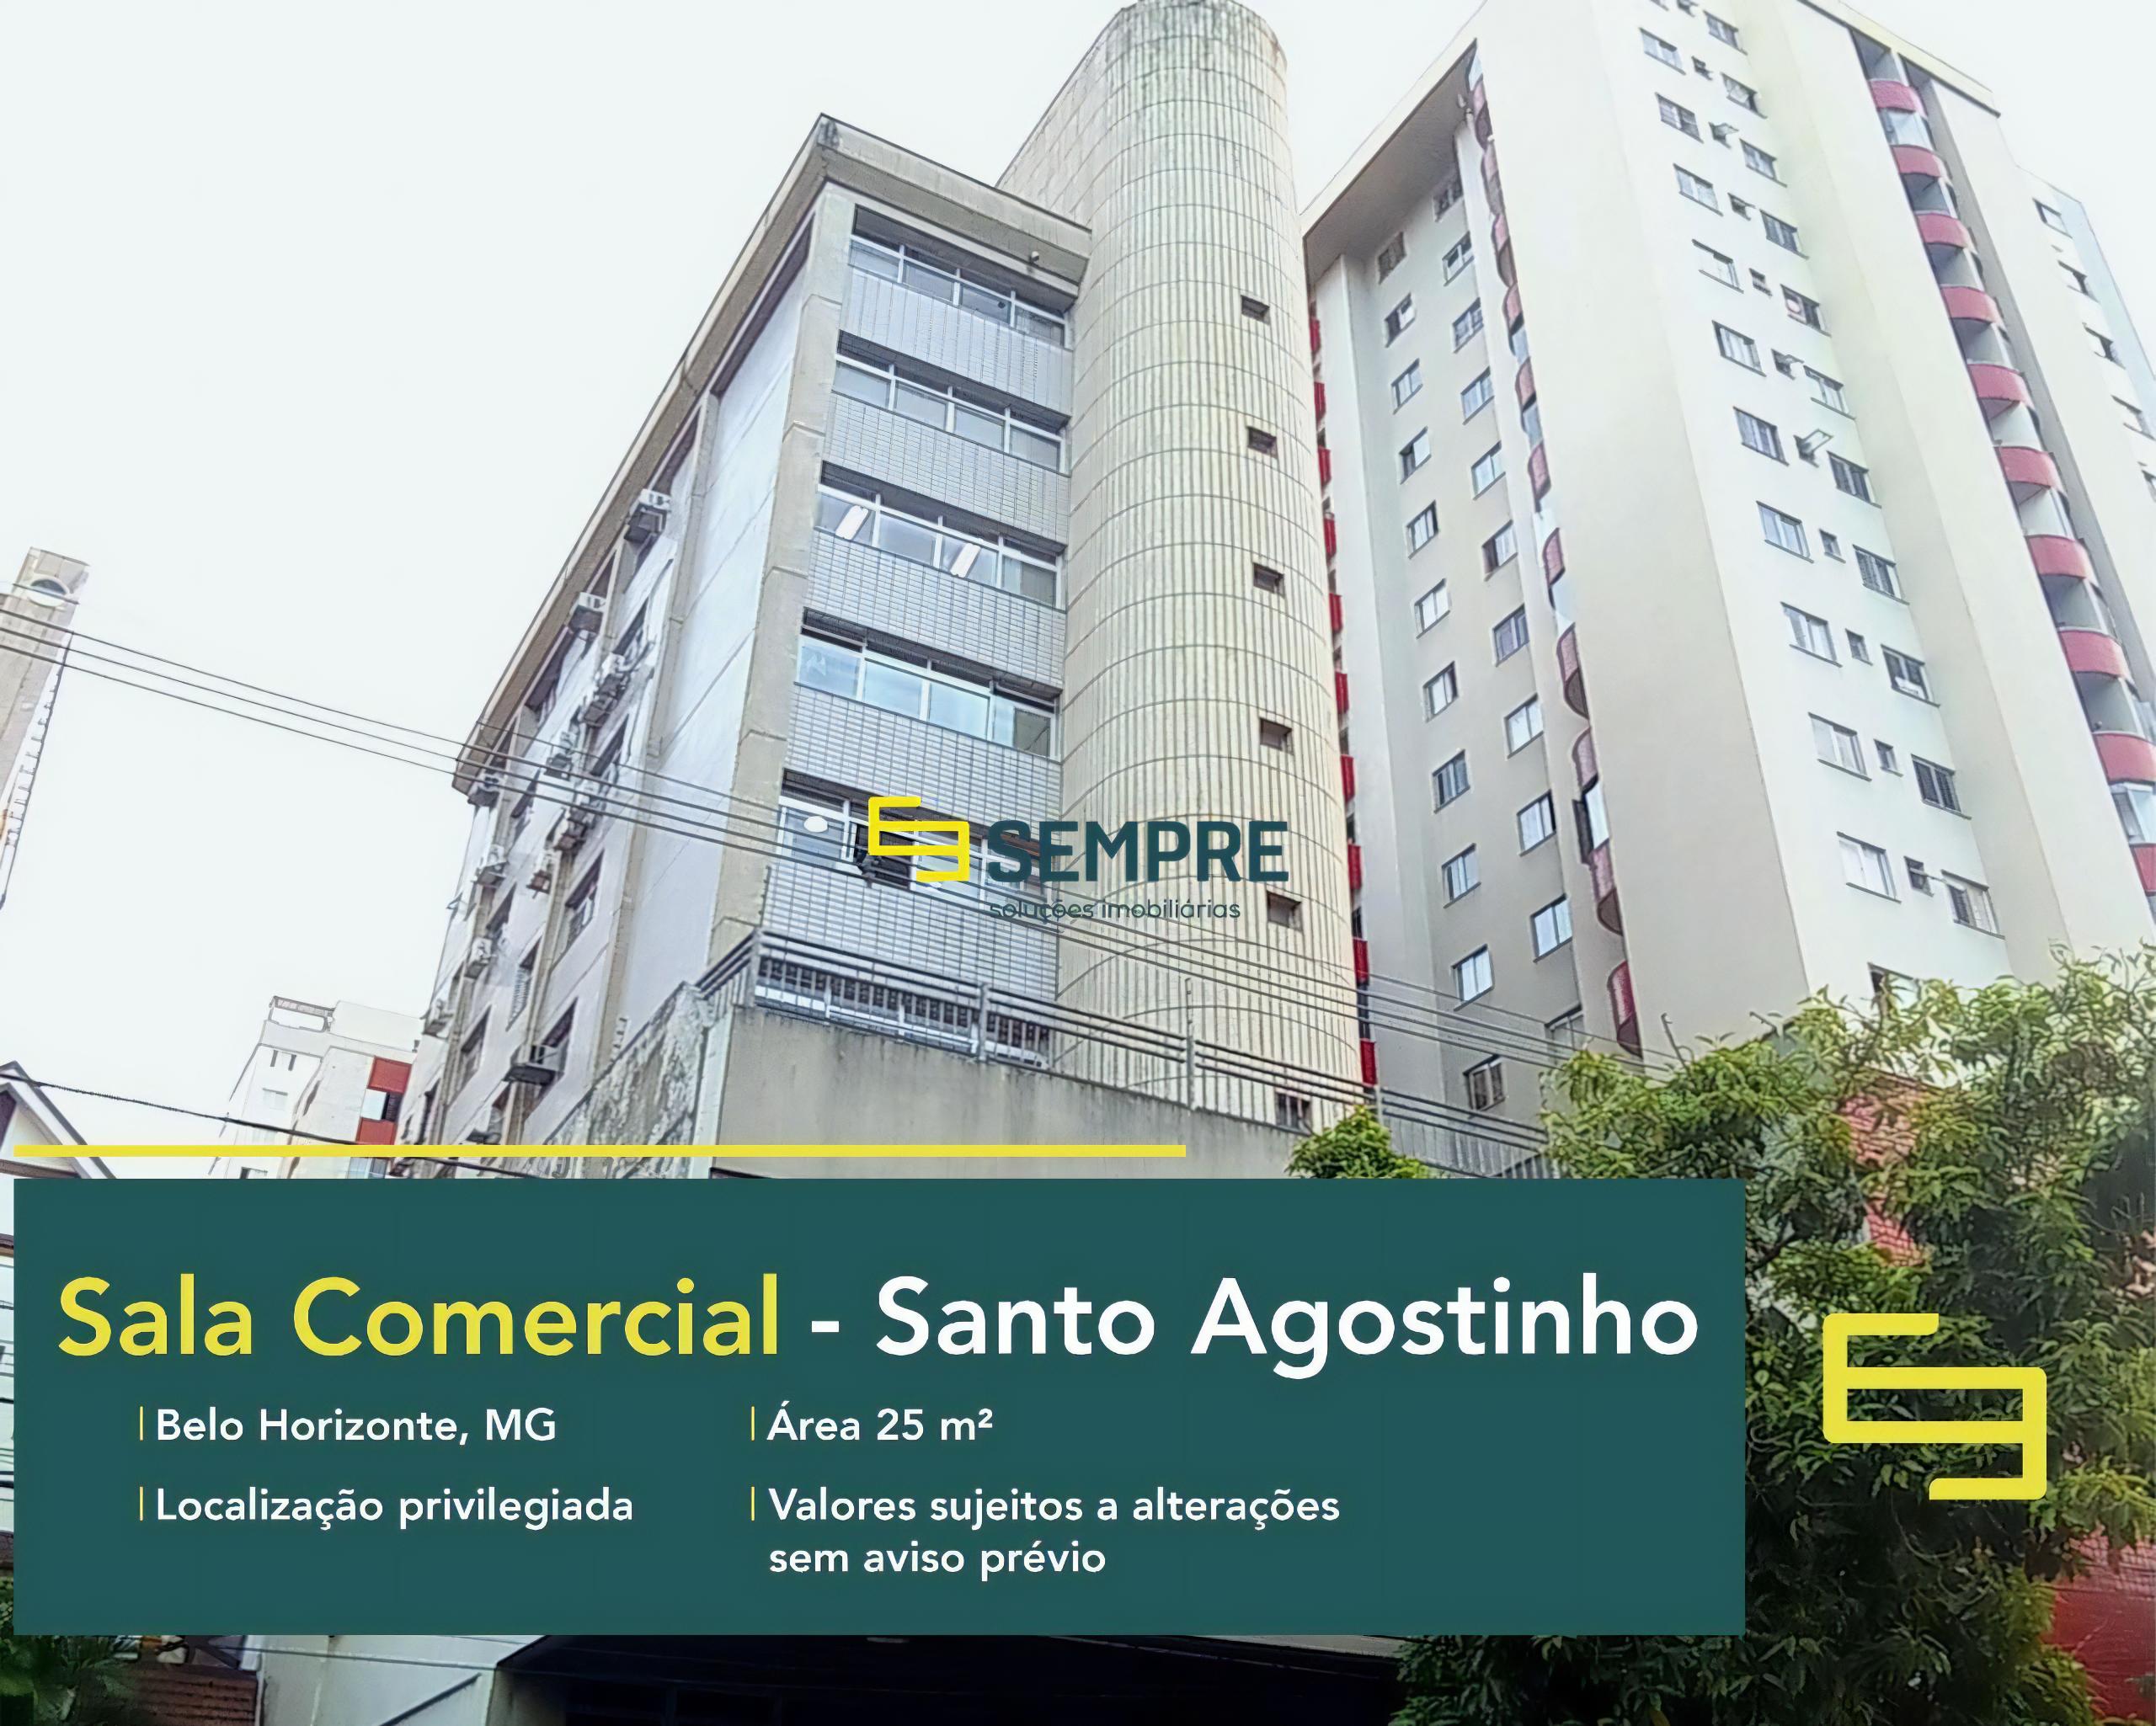 Sala comercial no bairro Santo Agostinho à venda em Belo Horizonte, excelente localização. O ponto comercial conta com área de 25 m².